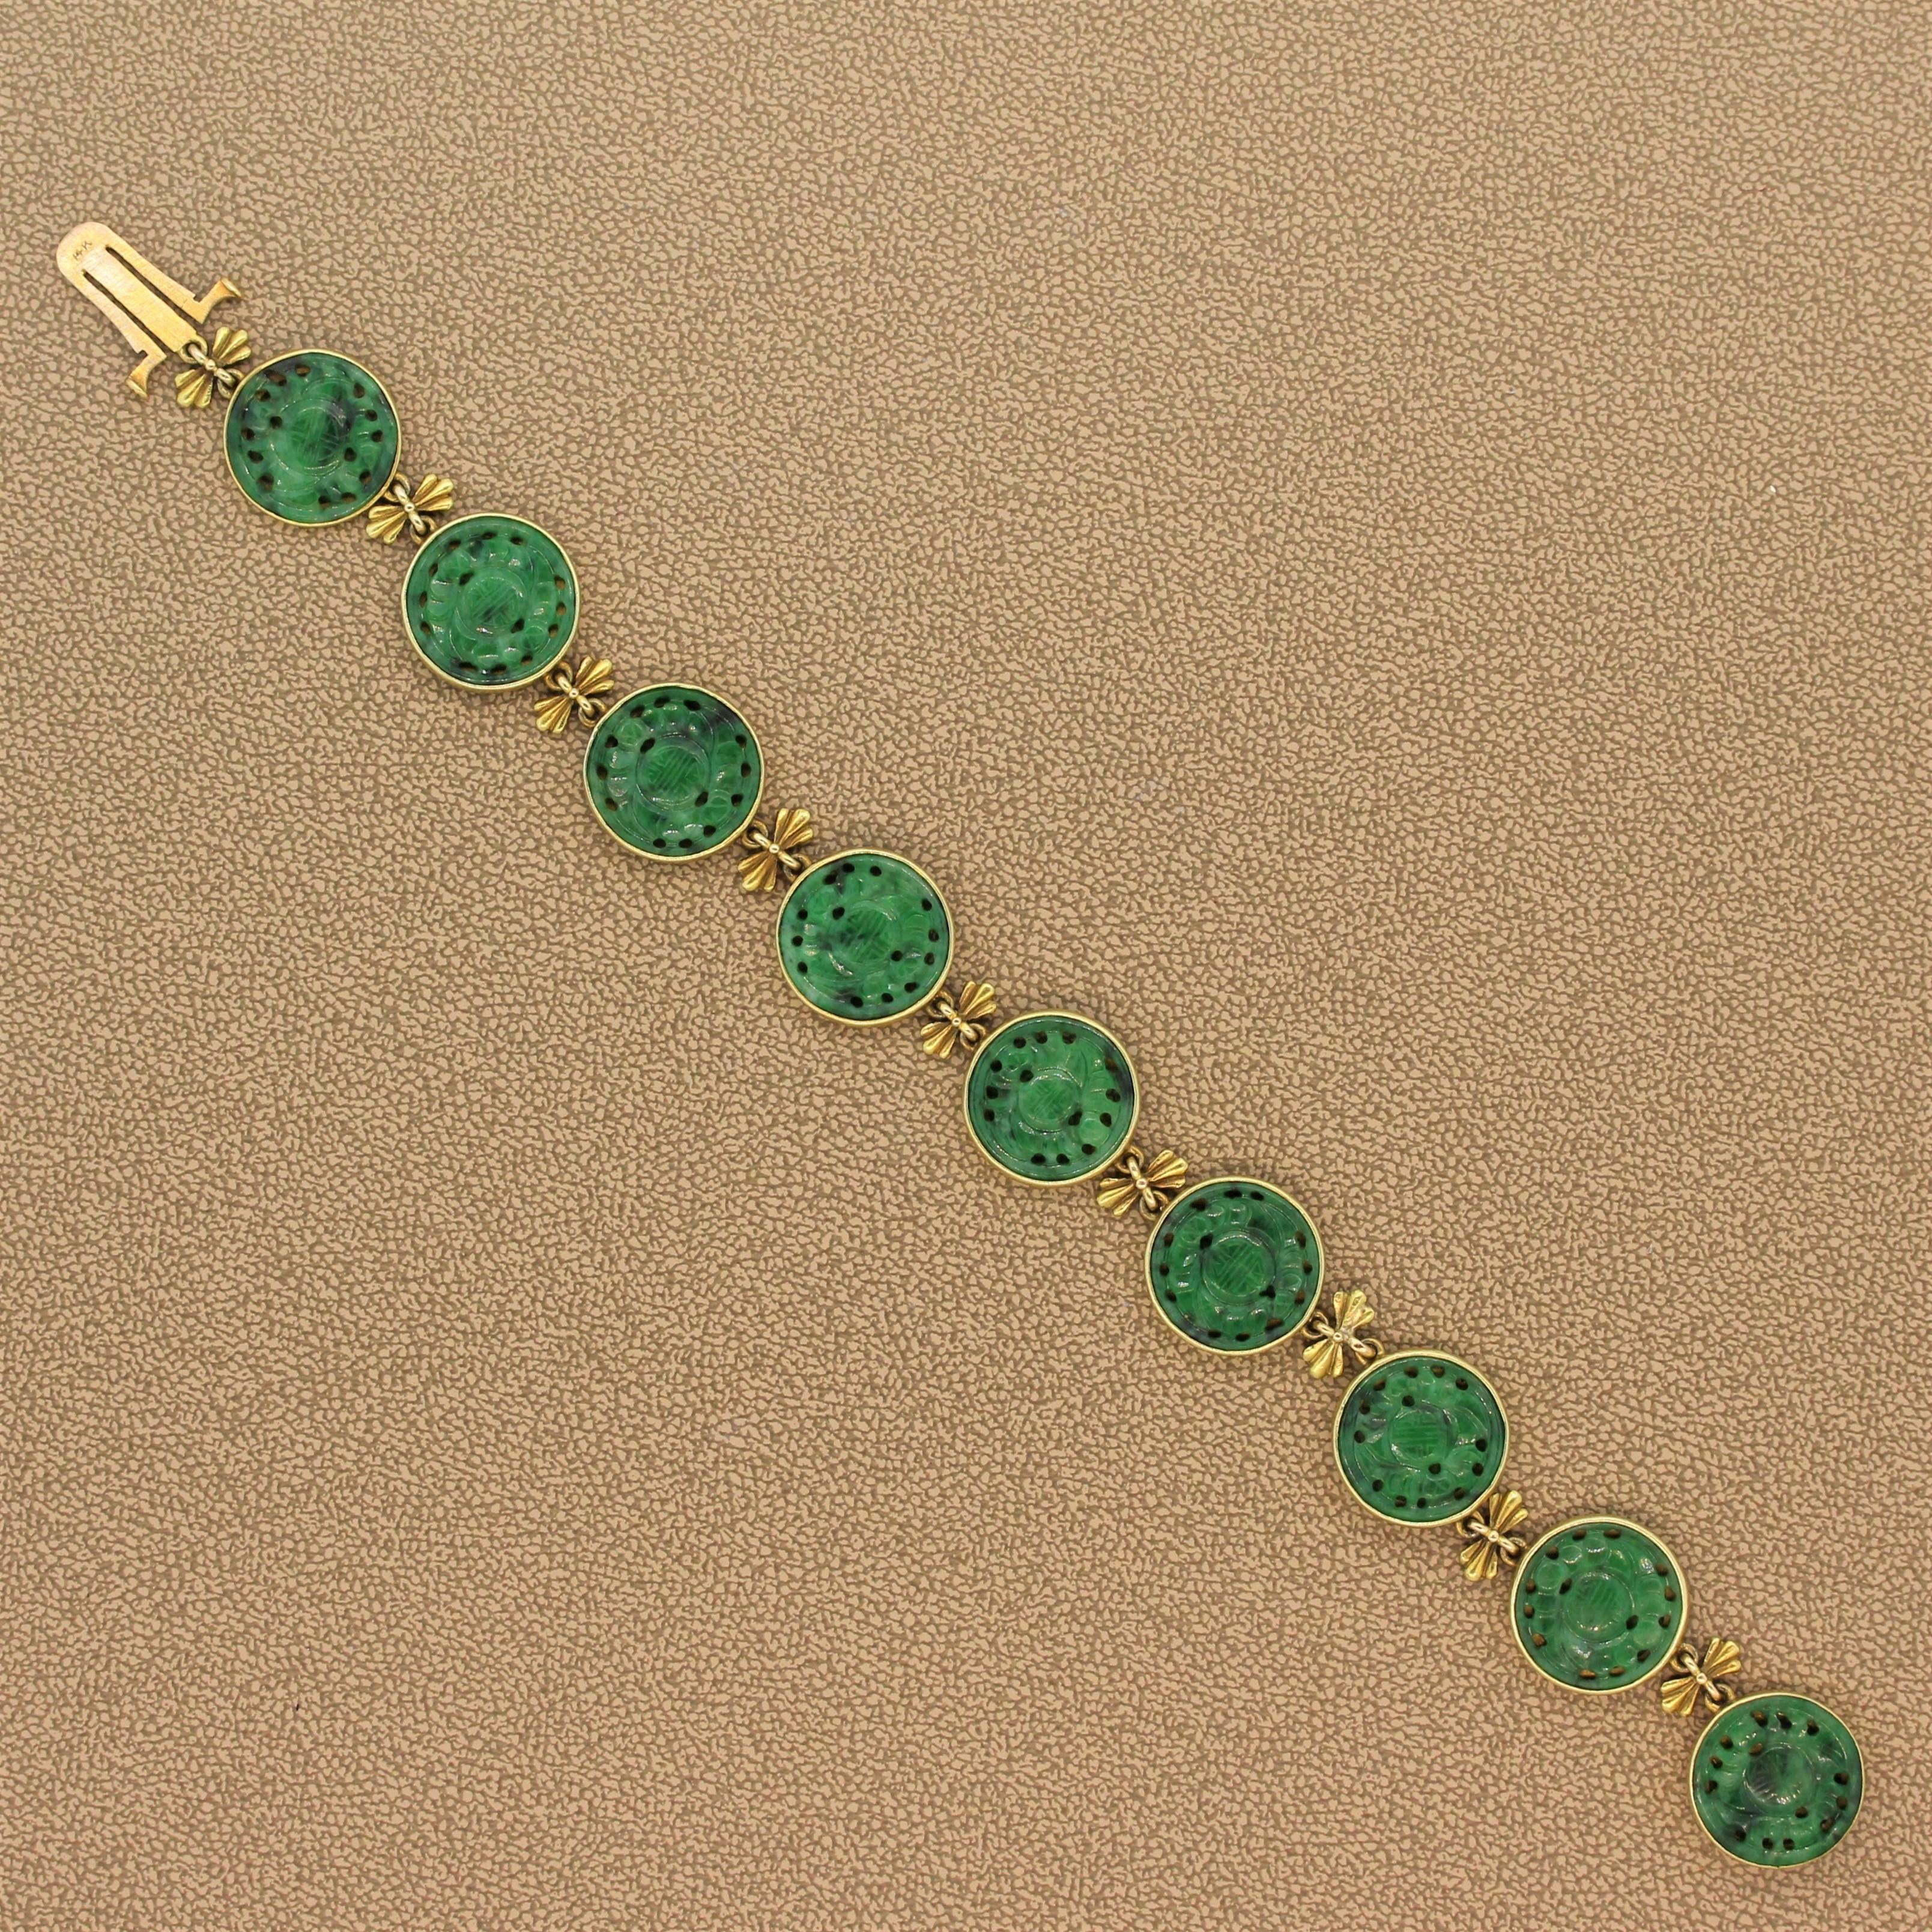 Un bracelet de propriété réalisé par des experts, avec neuf néphrites sculptées vert foncé serties dans de l'or jaune 18 carats. Les liens sont attachés à l'aide de nœuds ornementaux en or. La serrure discrète et sécurisée fait également partie du